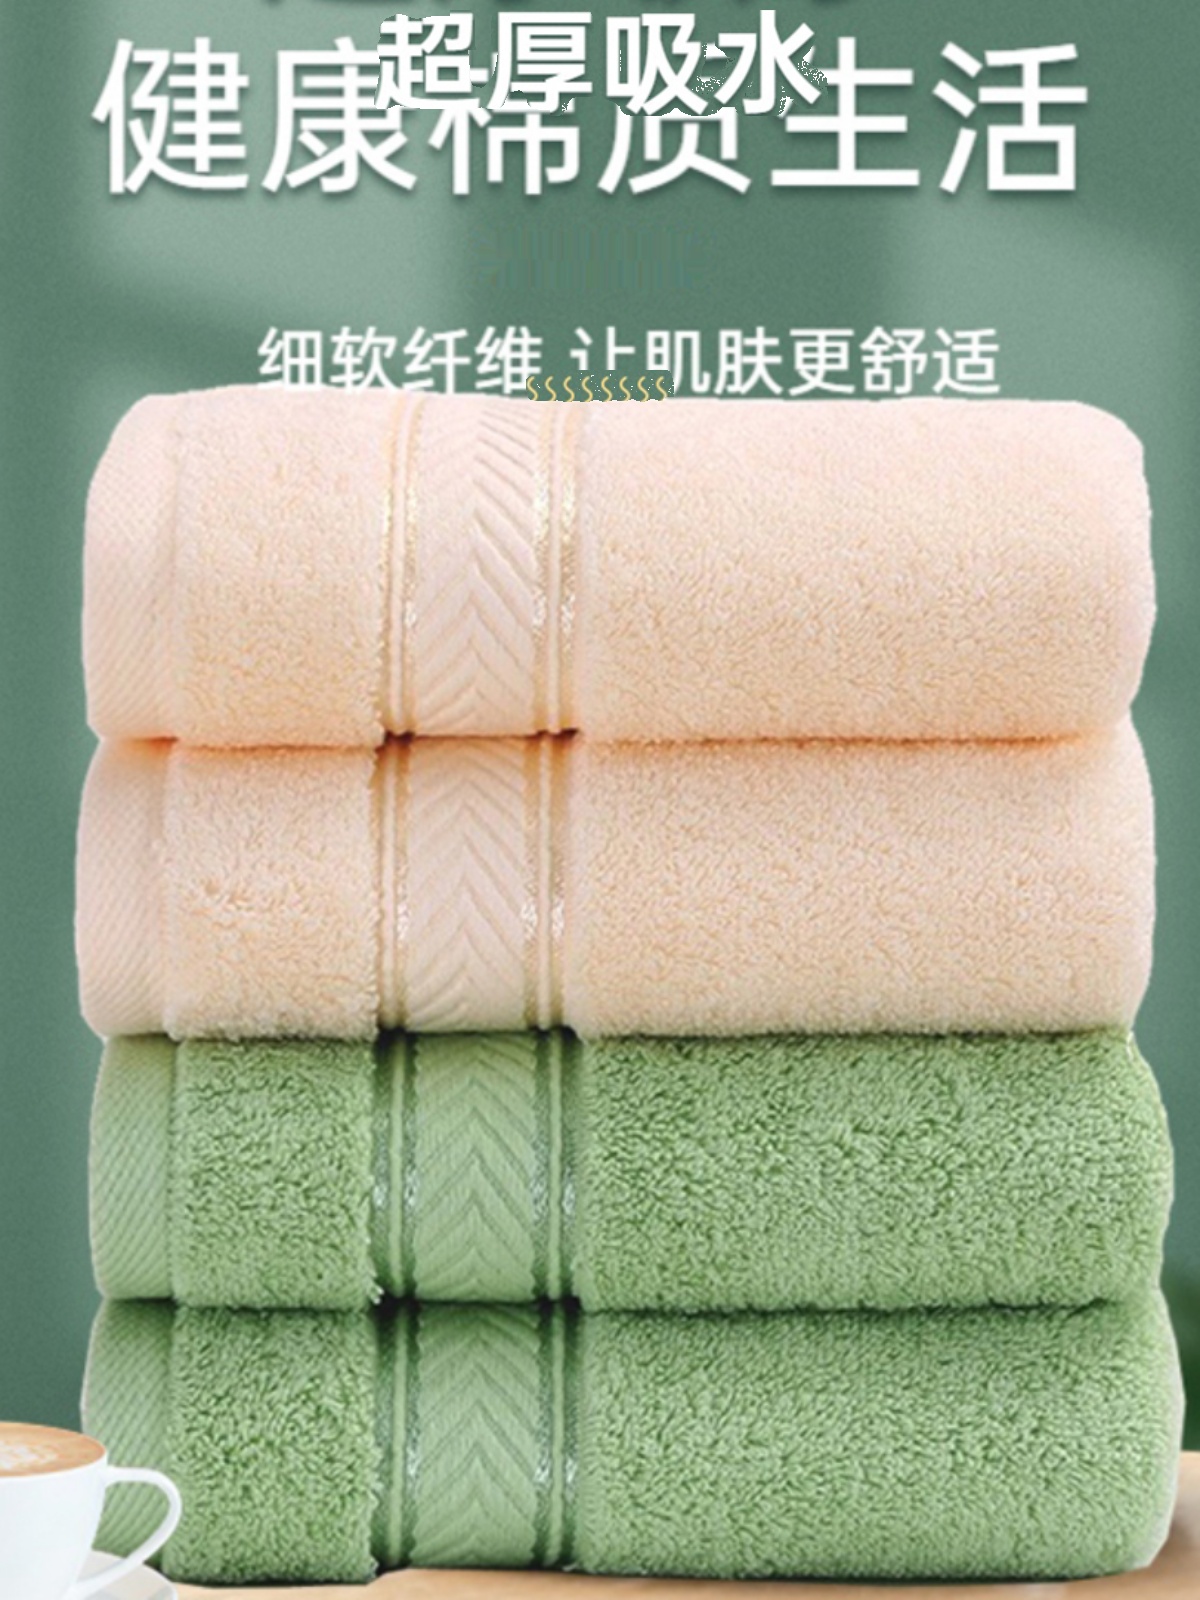 上海414全棉加厚毛巾纯棉3秒吸水家用成人男女柔软洗澡洗脸巾2条